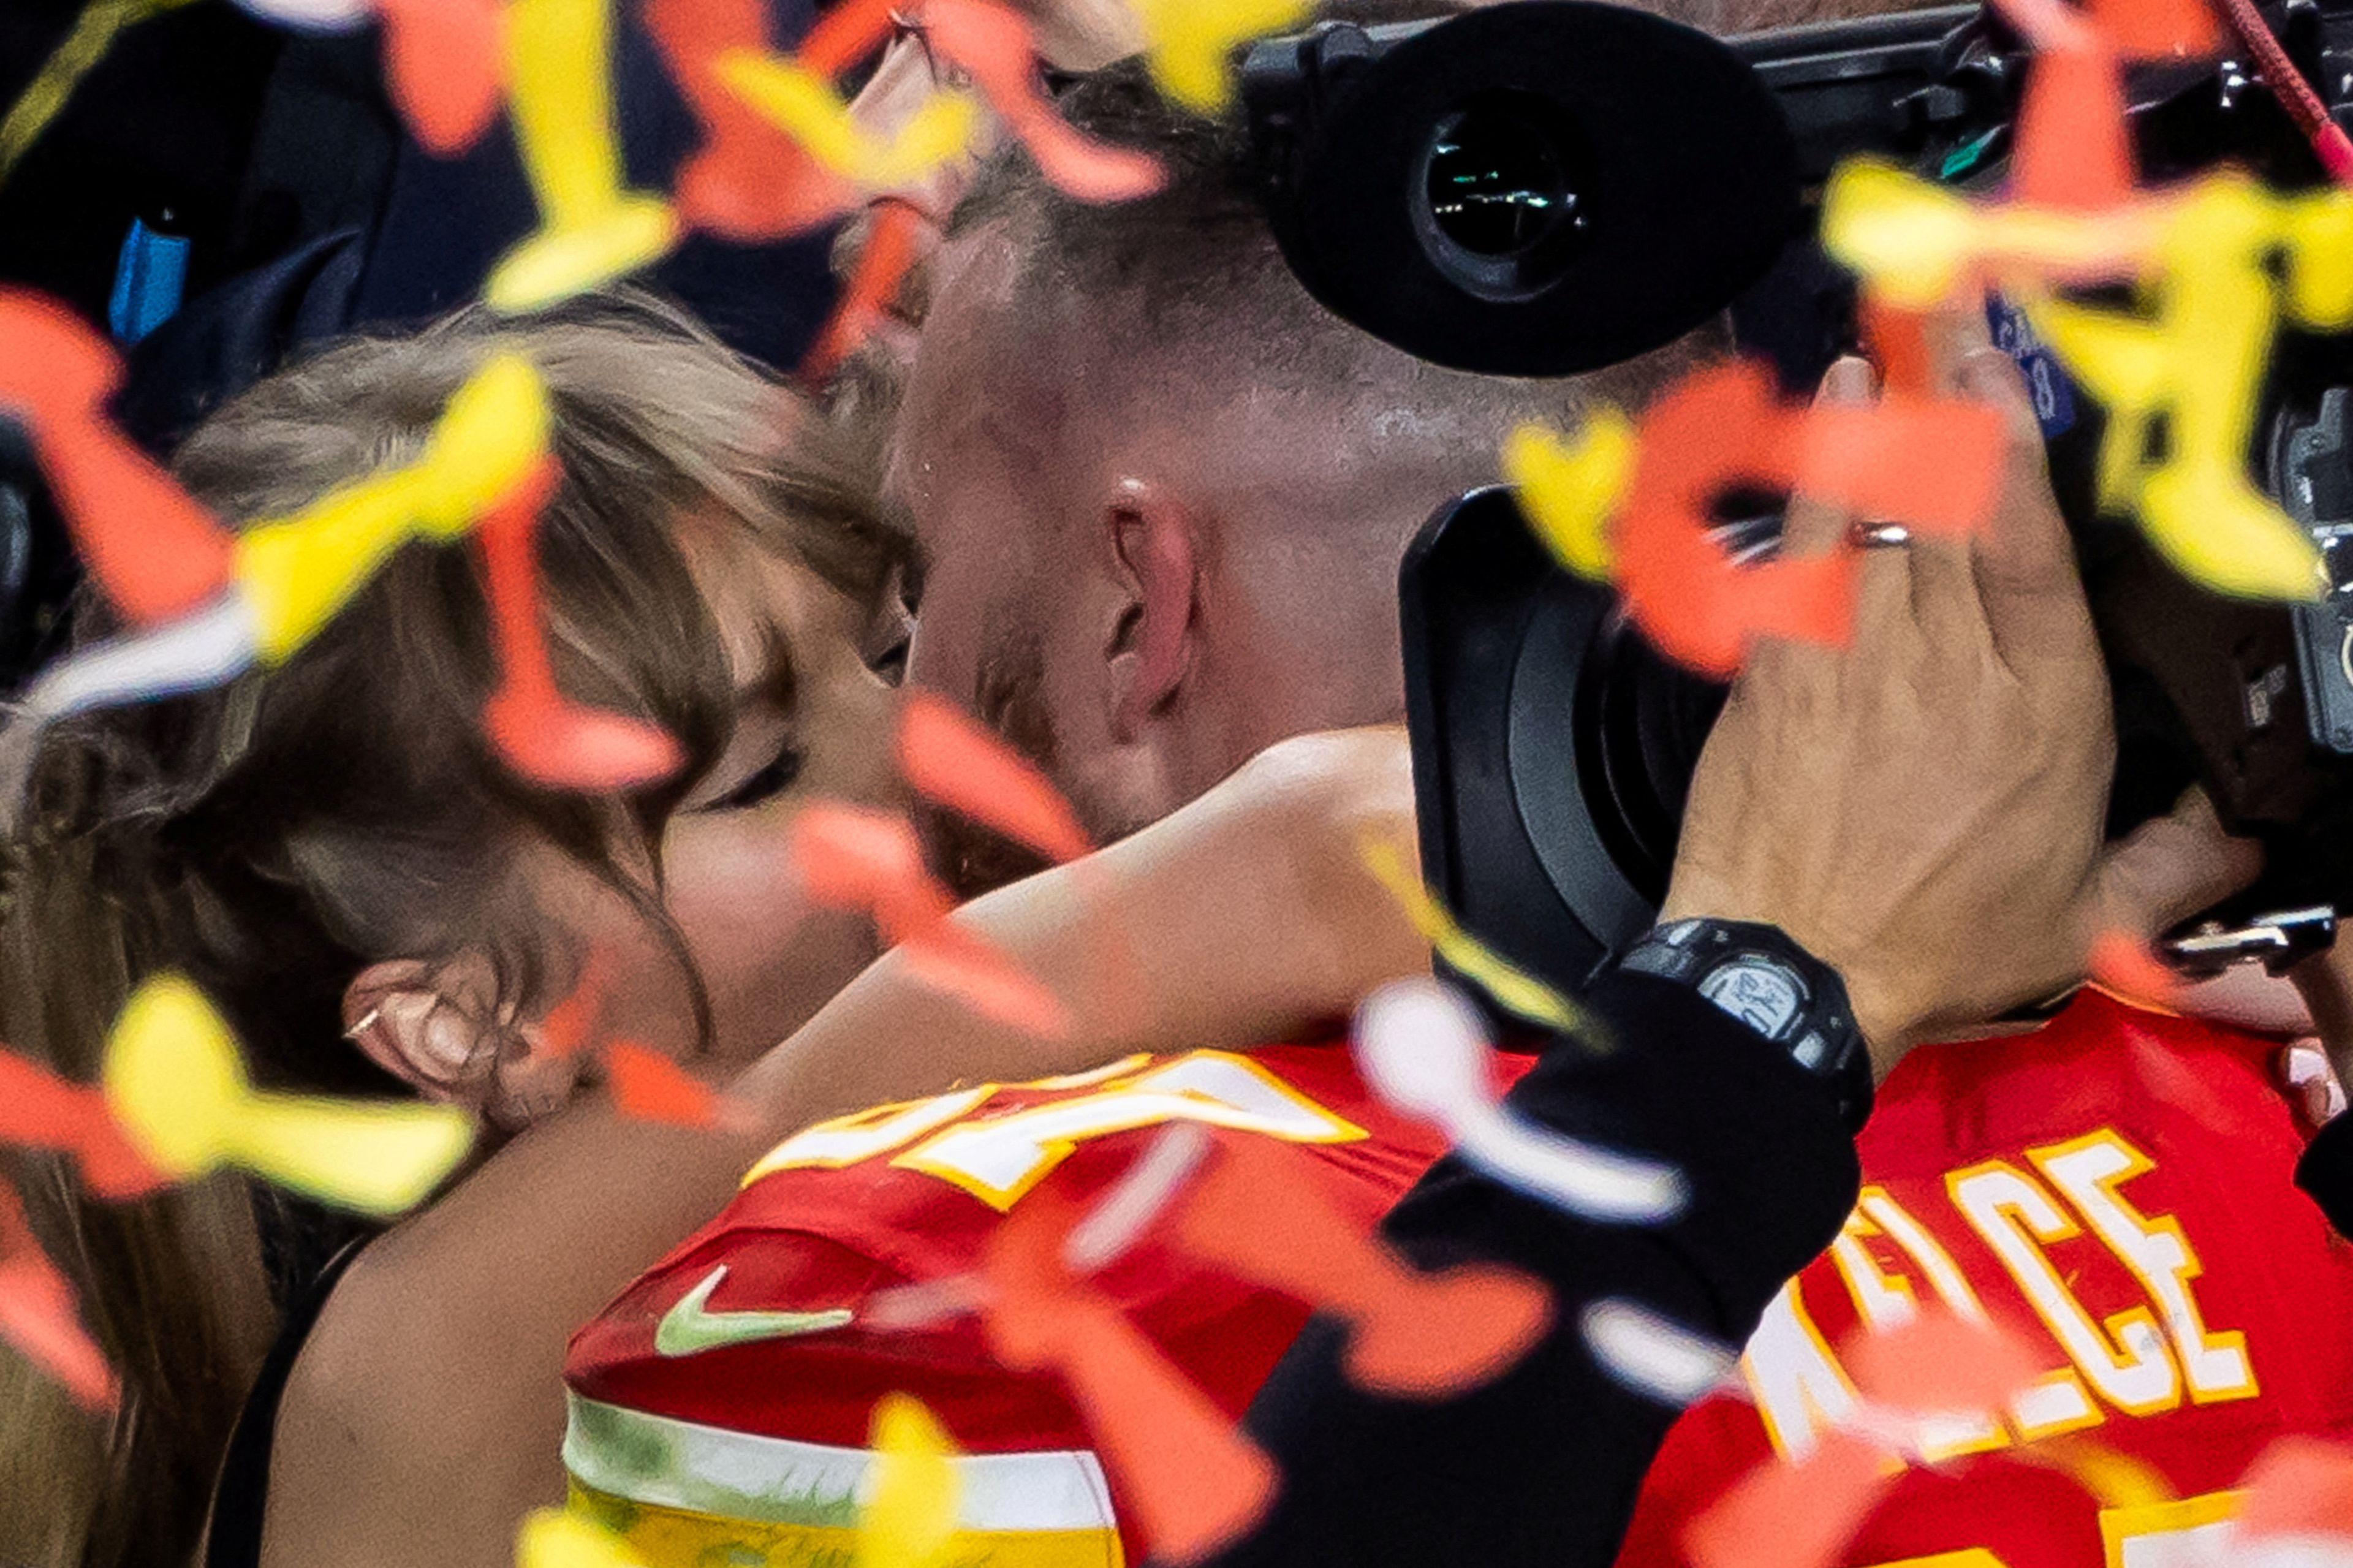 La foto del día: Los Kansas City Chiefs conquistaron anoche la Super Bowl en Las Vegas, en el gran evento deportivo del año en Estados Unidos. En la imagen, Taylor Swift besa a su pareja, Travis Kelce, una de las estrellas de los Chiefs.